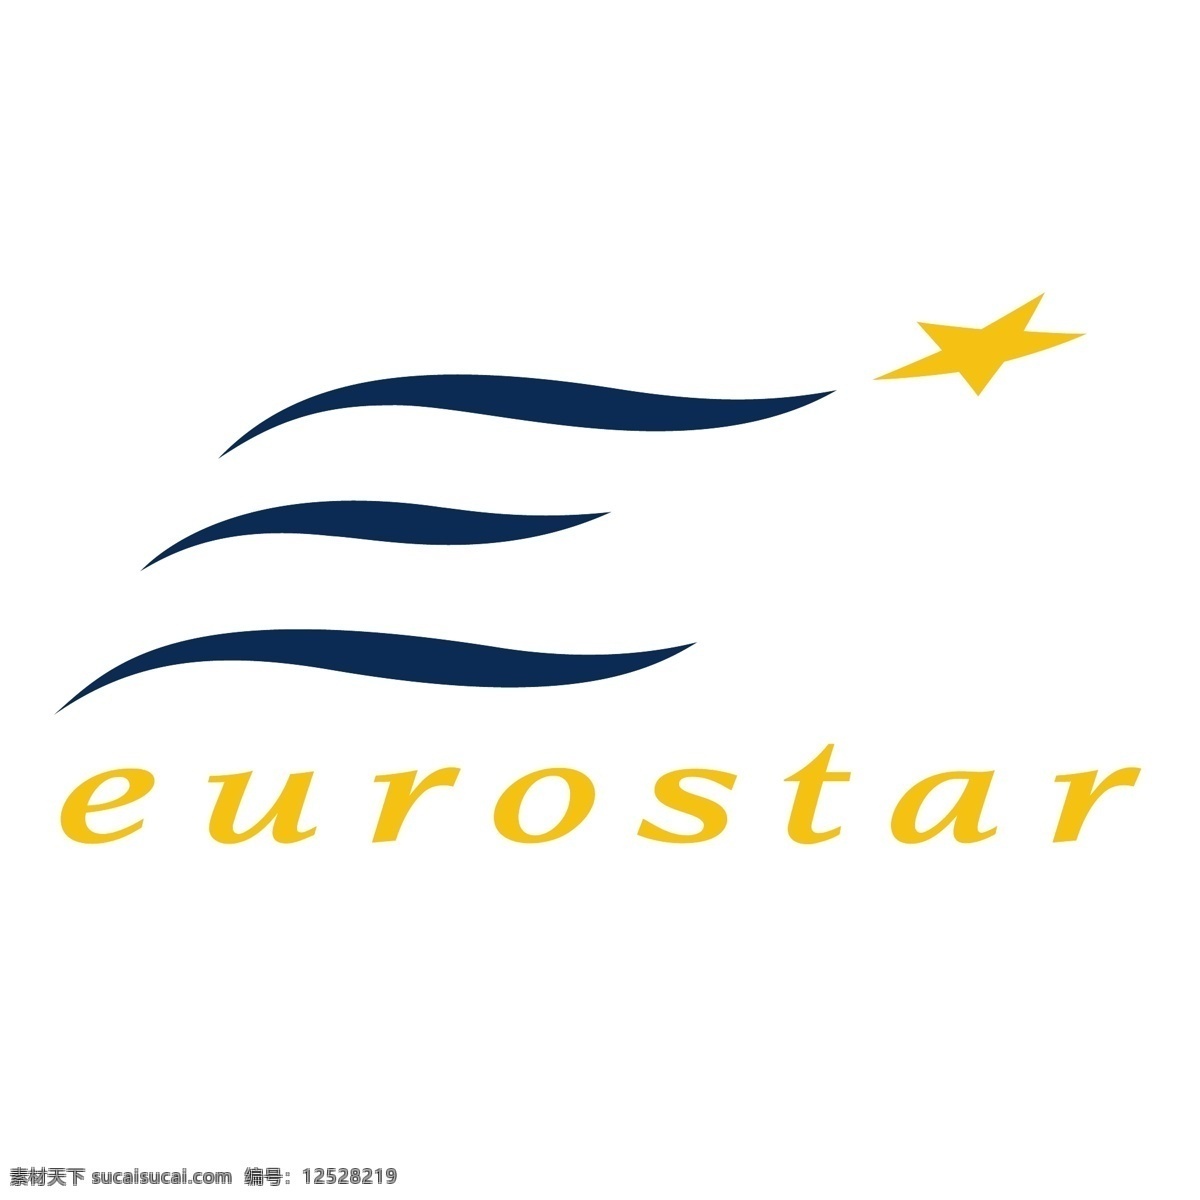 欧洲 之星 标识 公司 免费 品牌 品牌标识 商标 矢量标志下载 免费矢量标识 矢量 psd源文件 logo设计